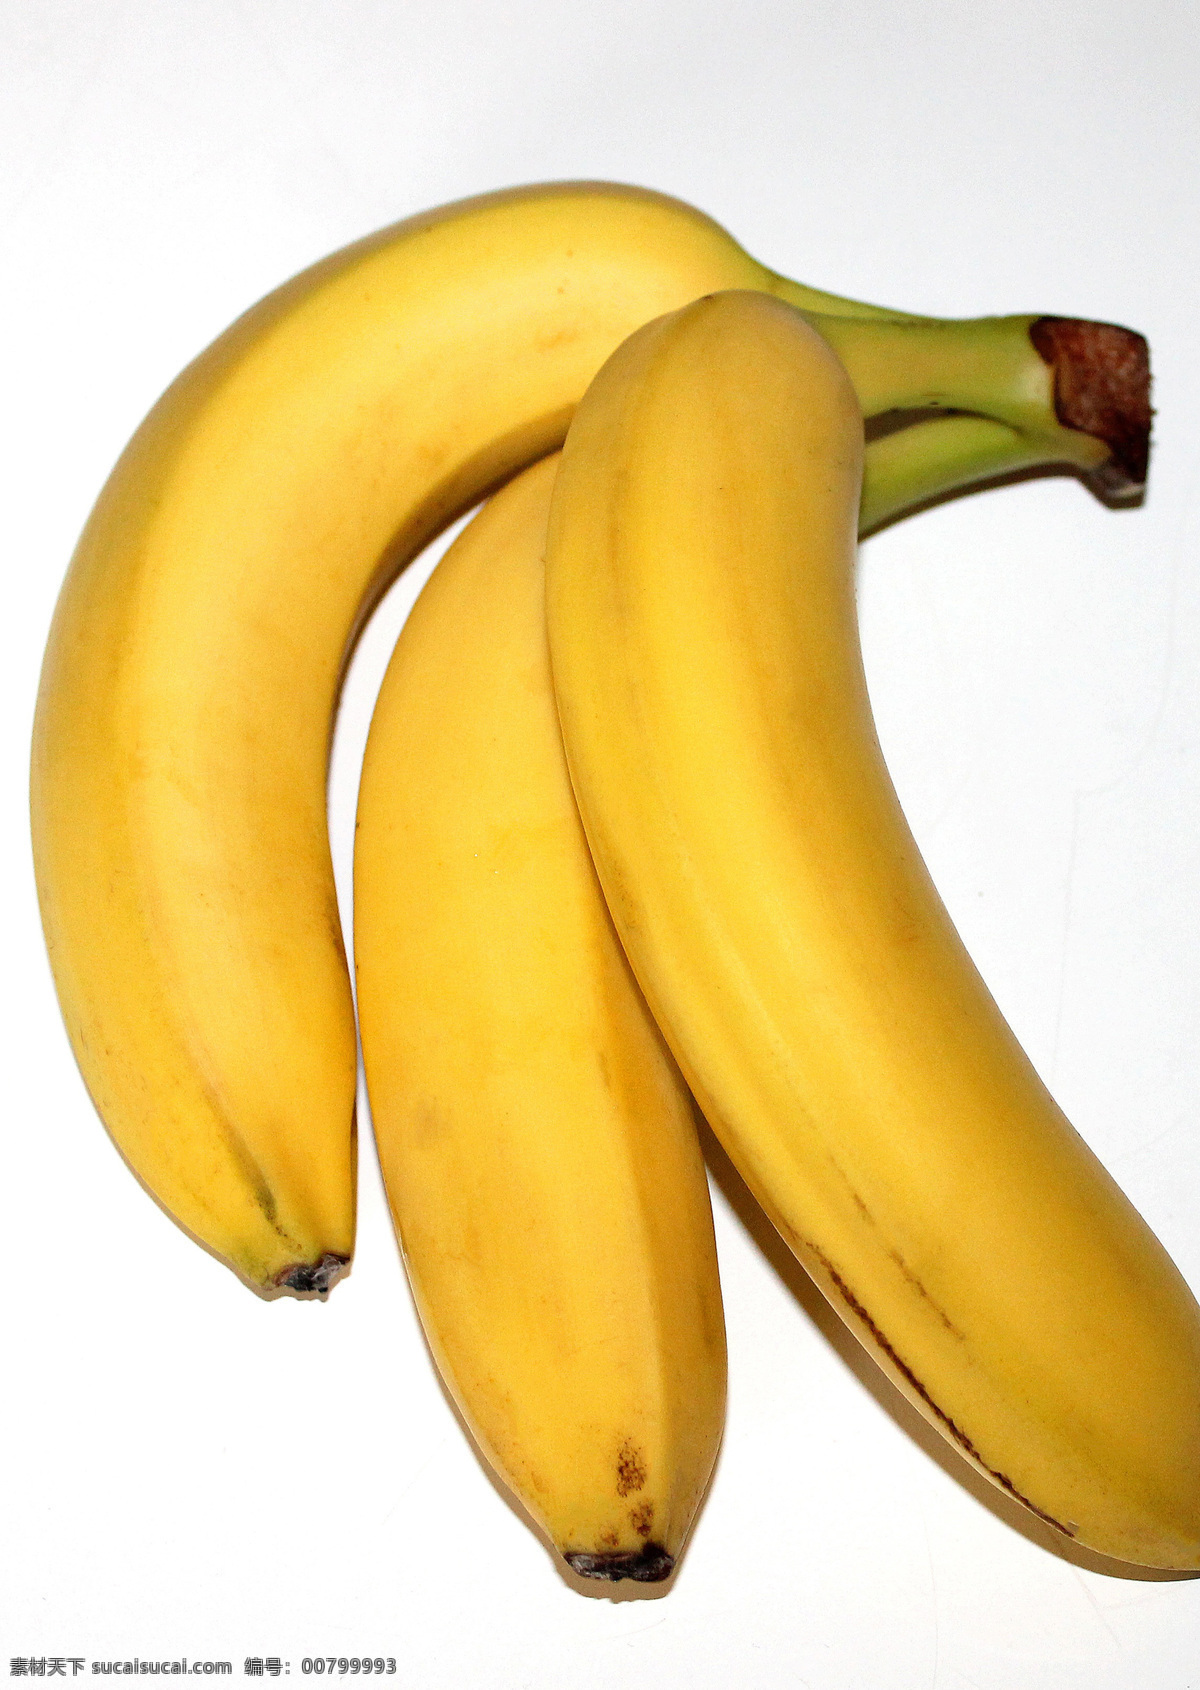 金蕉 弓蕉 水果 香蕉素材 香蕉特写 新鲜水果 水果壁纸 水果素材 水果特写 香蕉壁纸 果蔬 水果蔬菜 芭蕉科 芭蕉属